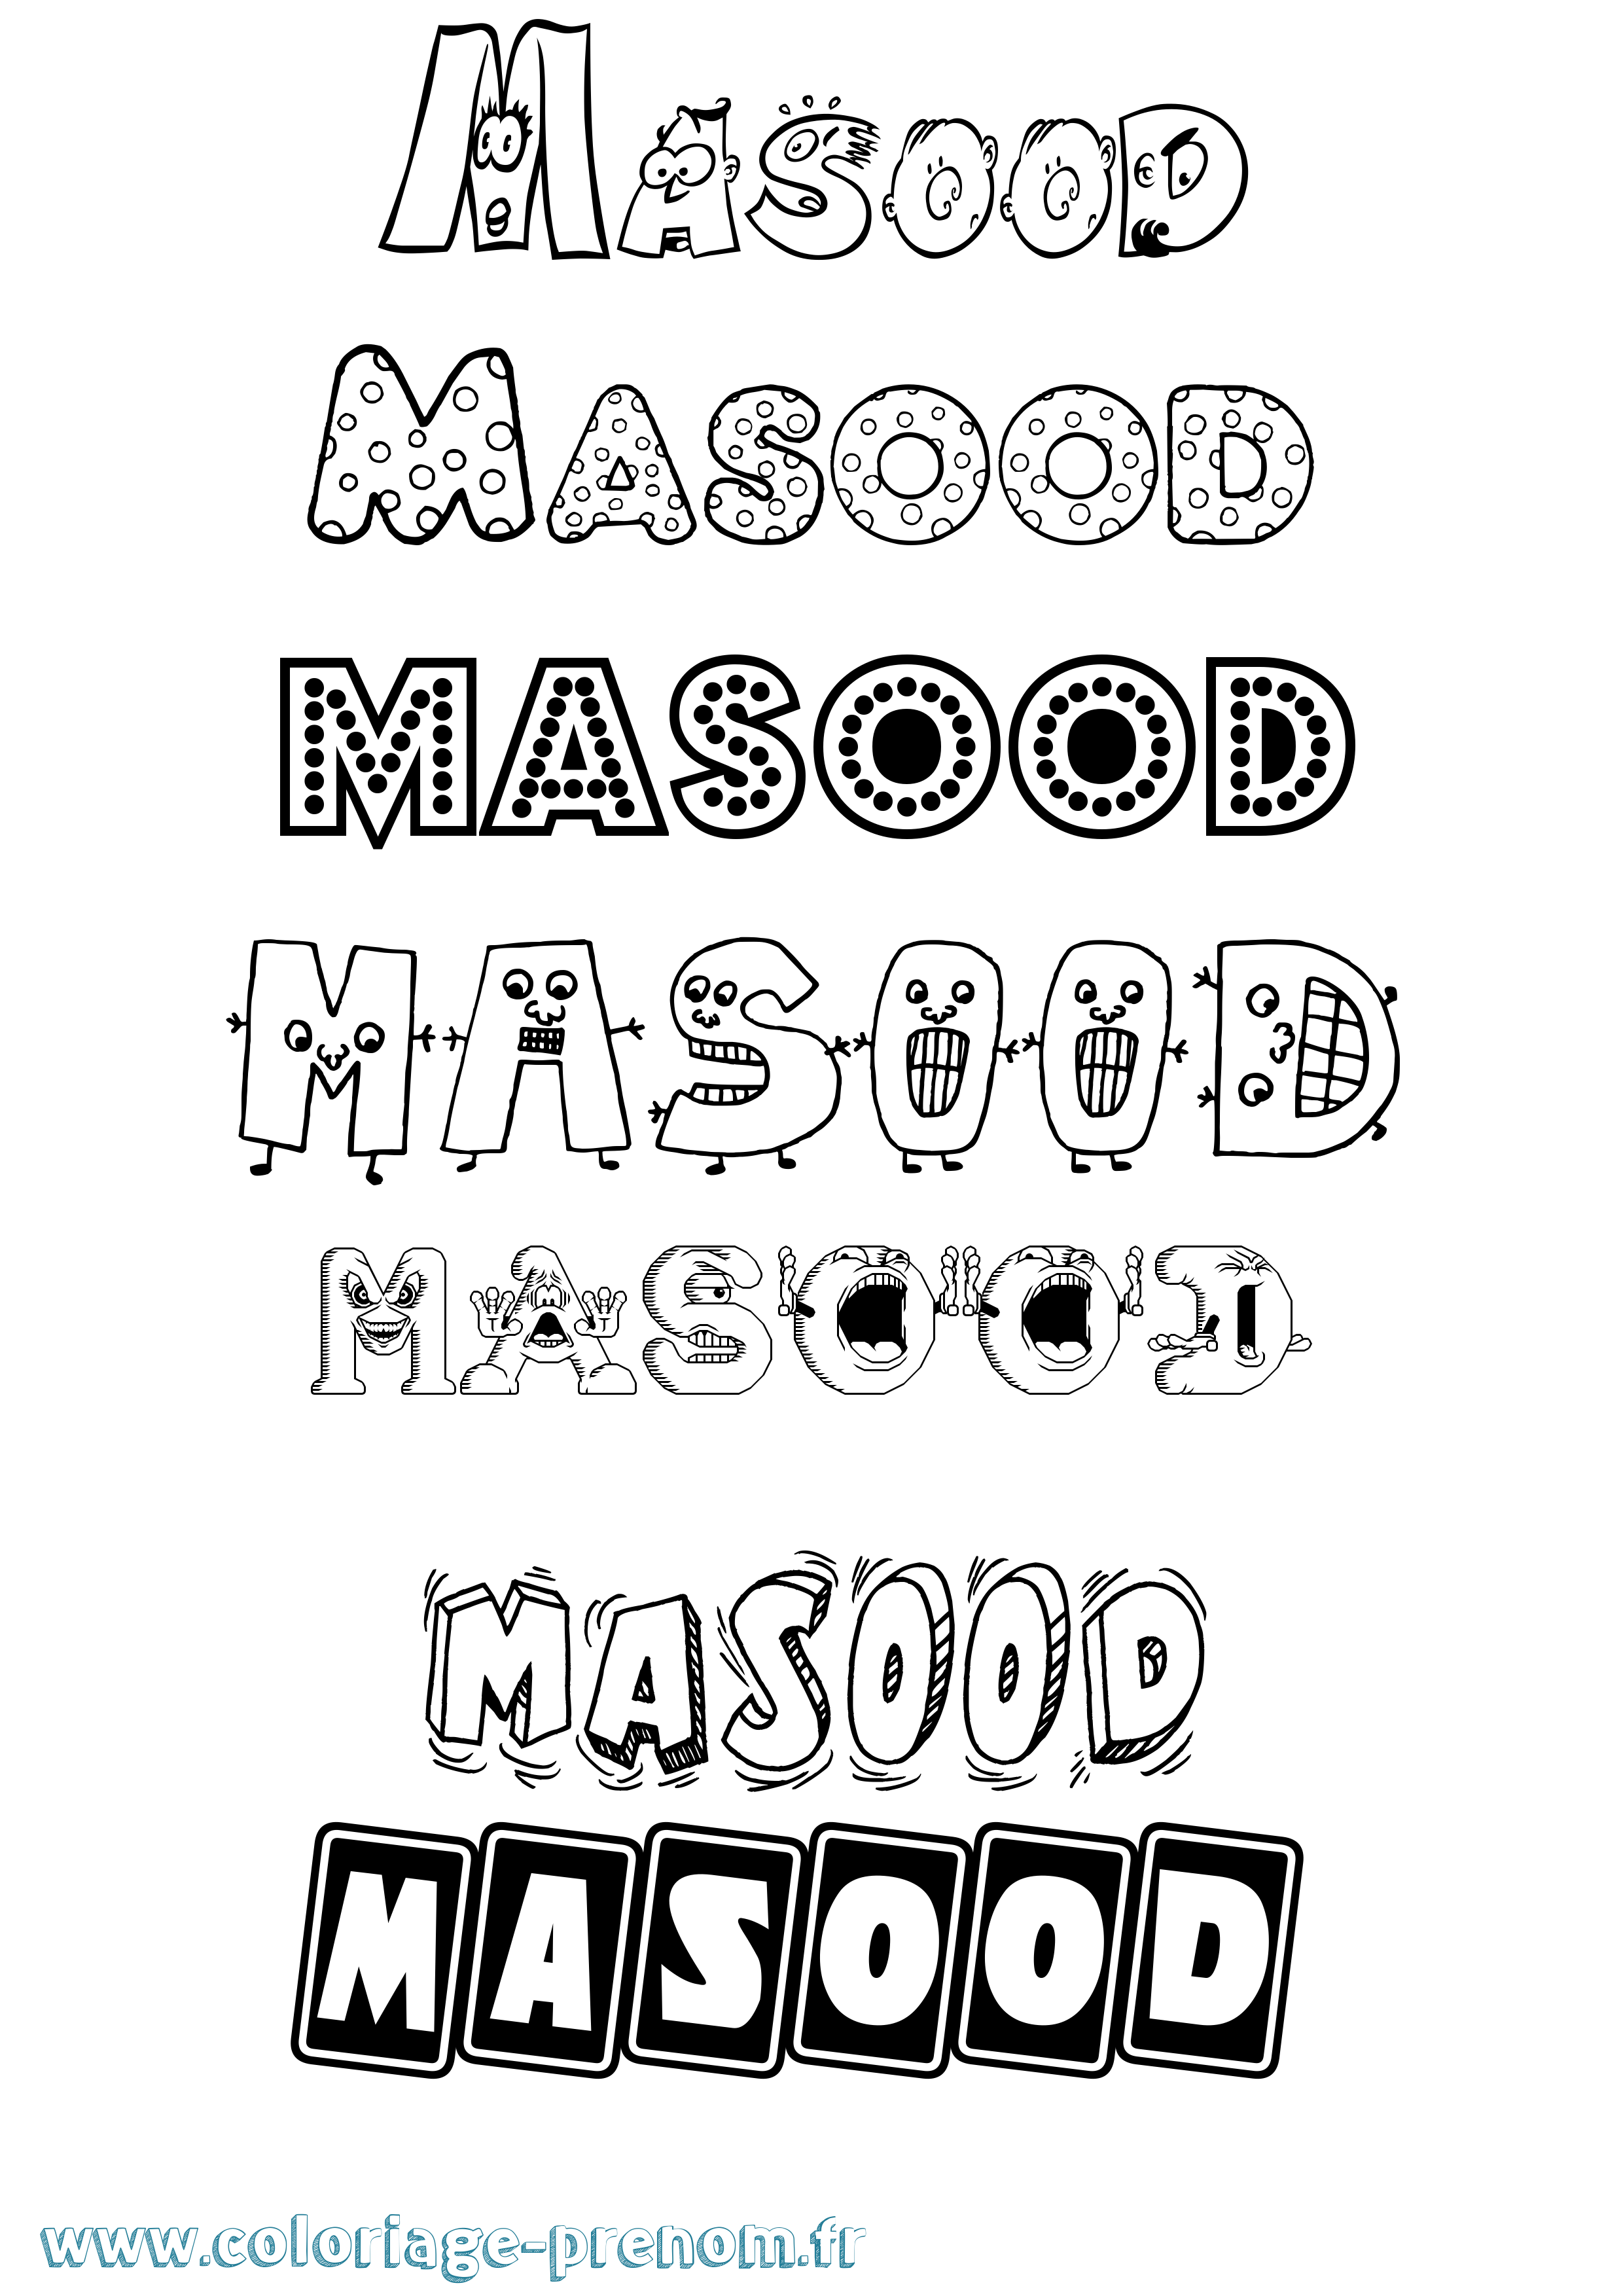 Coloriage prénom Masood Fun